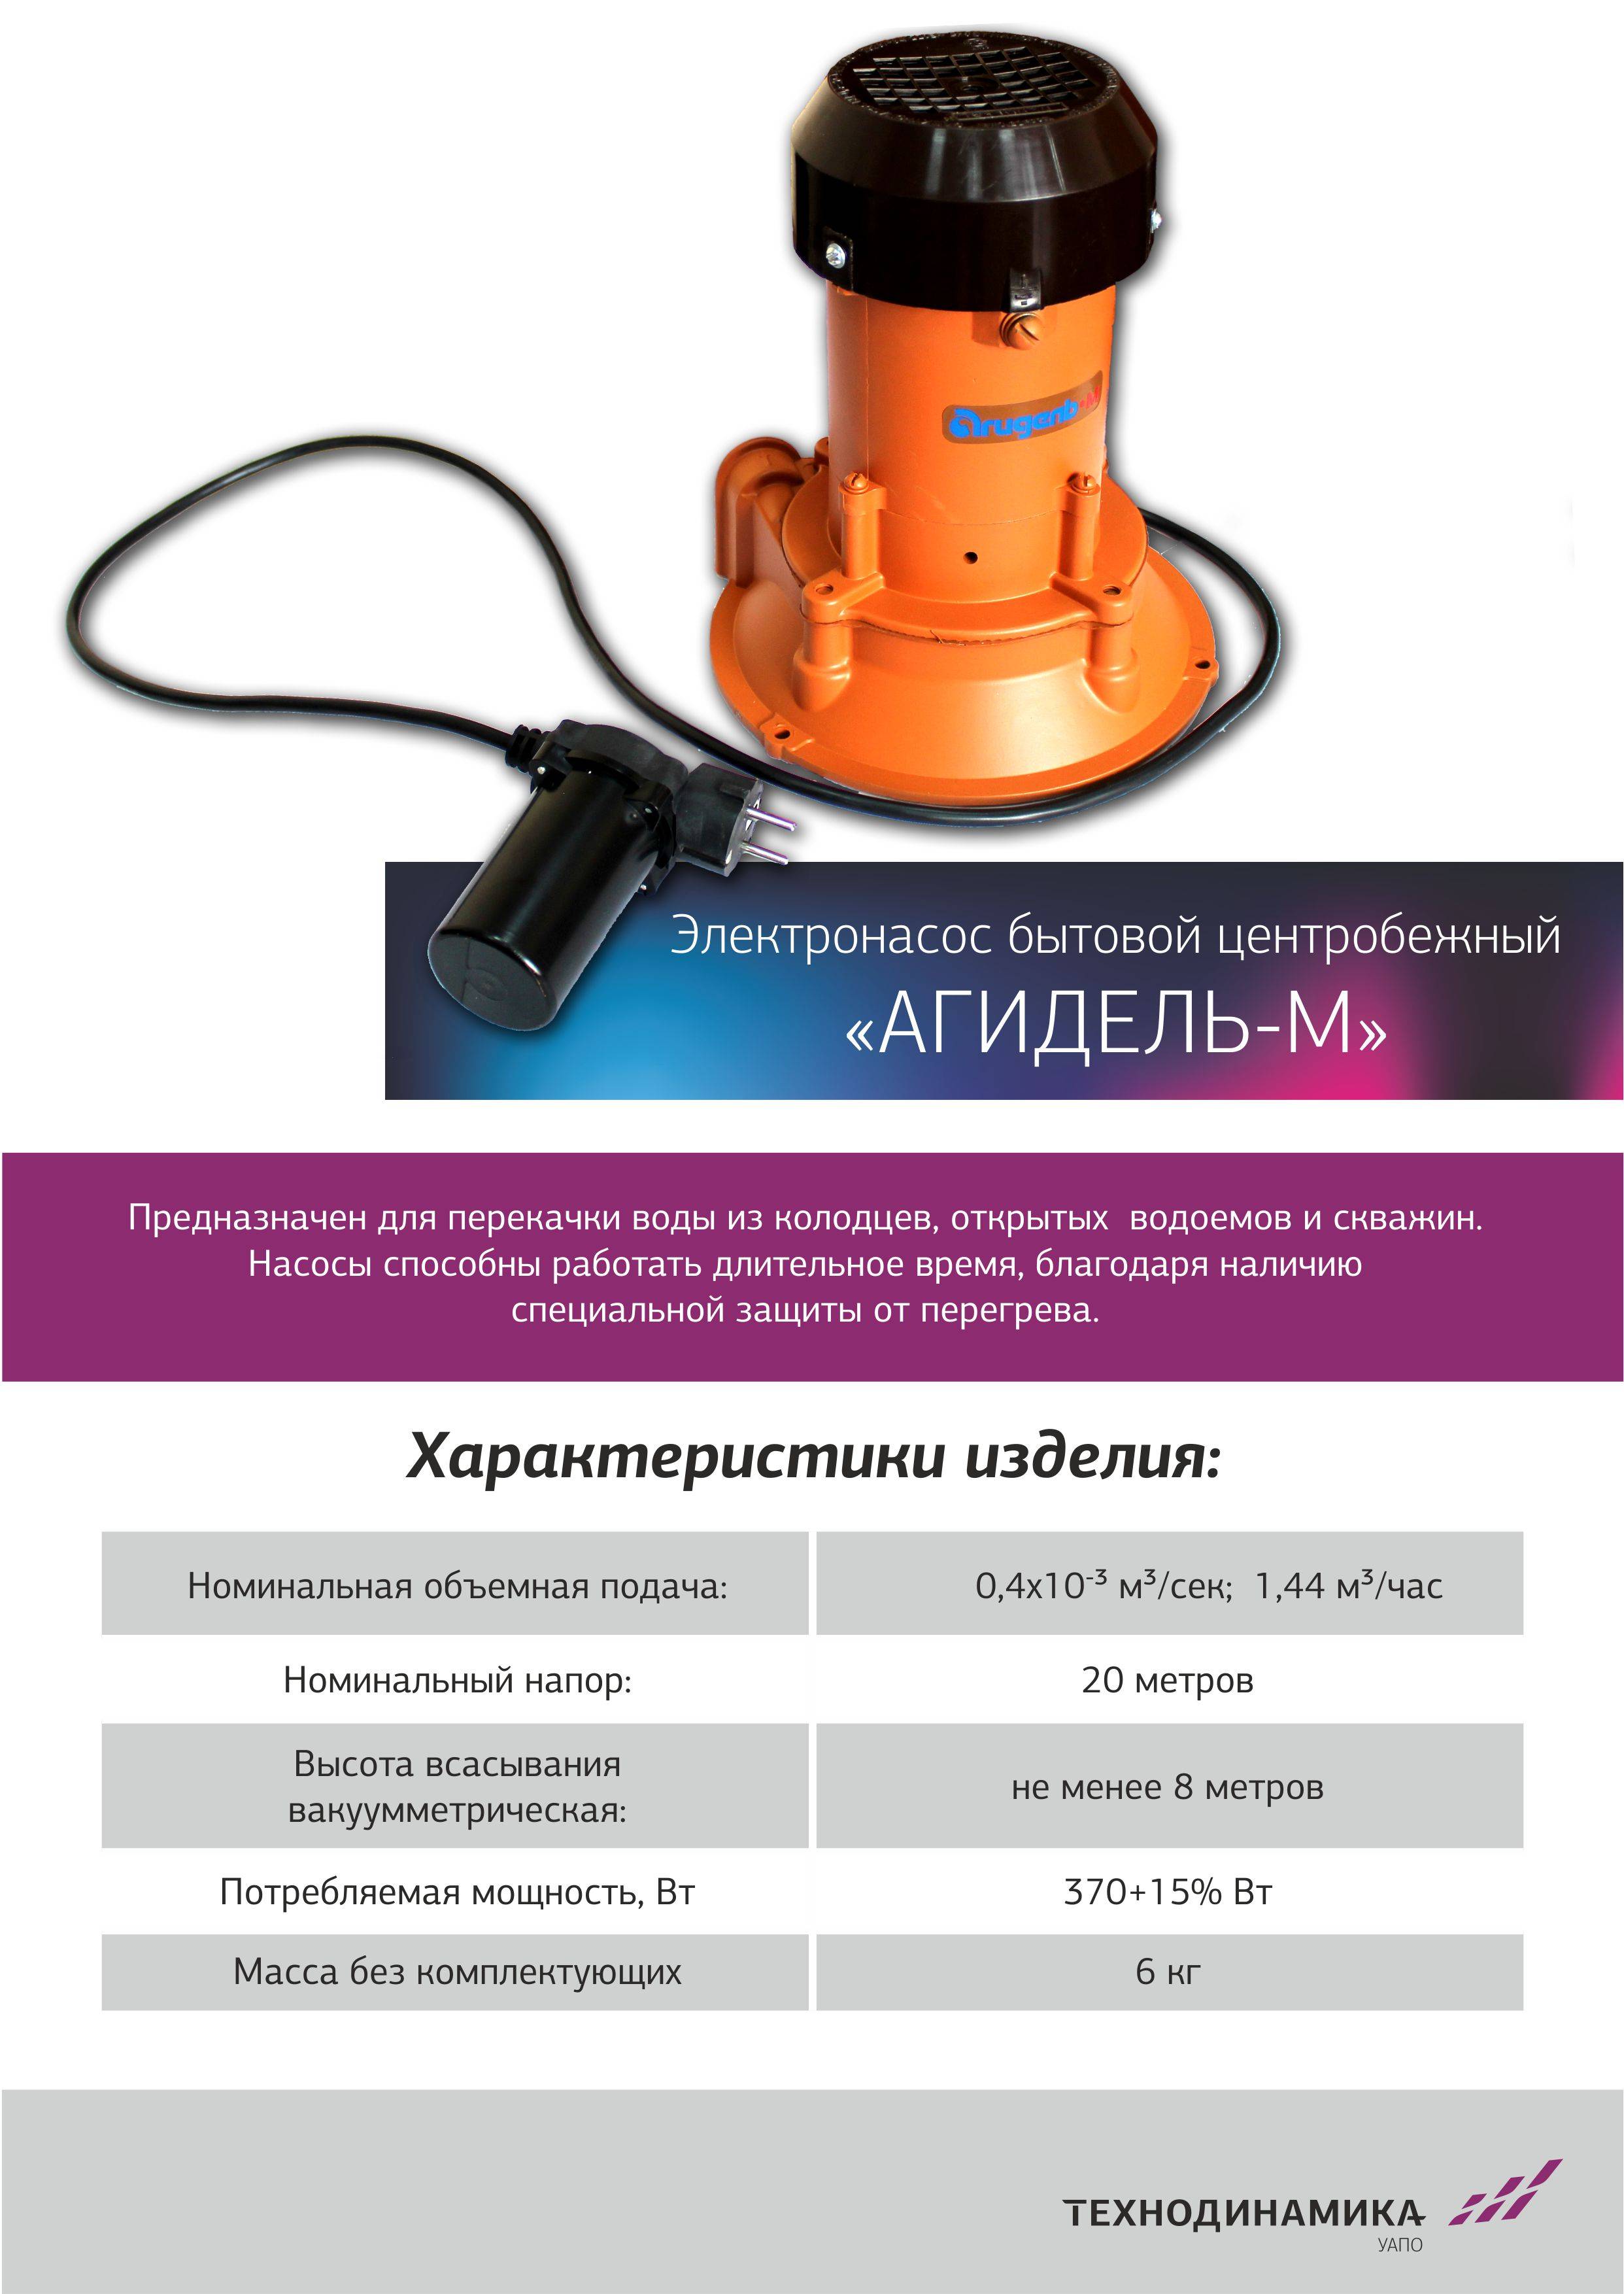 ✅ насос агидель м и 10: инструкция, характеристики, ремонт - dnp-zem.ru